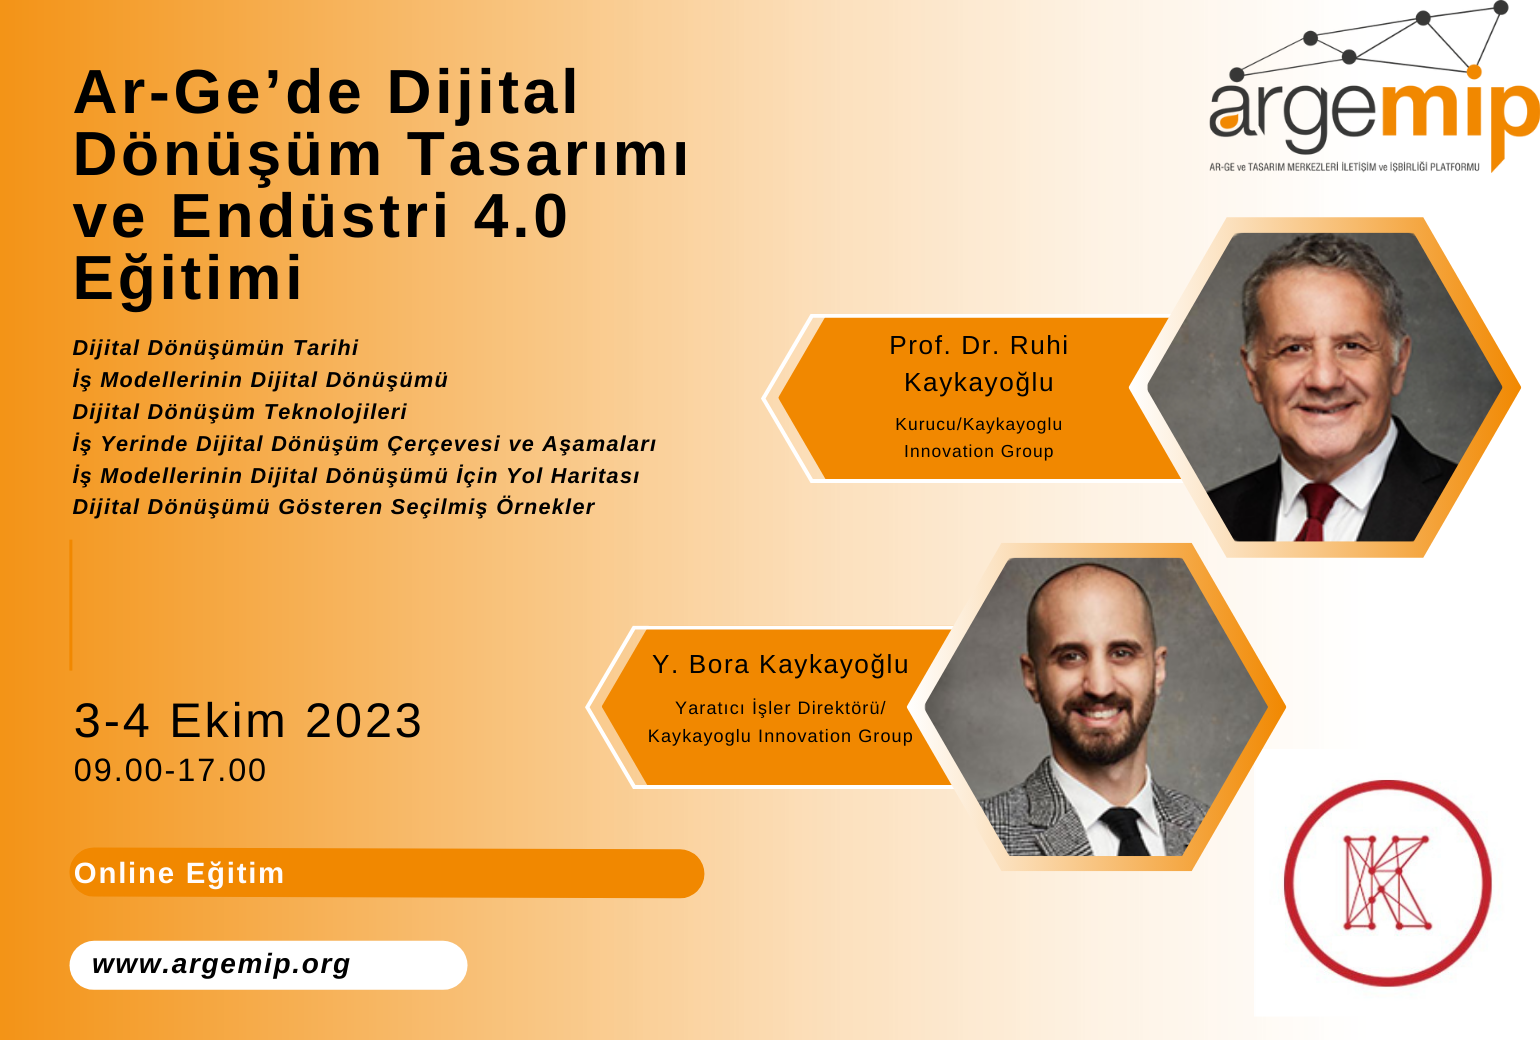 Ar-Ge ’de Dijital Dönüşüm Tasarımı ve Endüstri 4.0